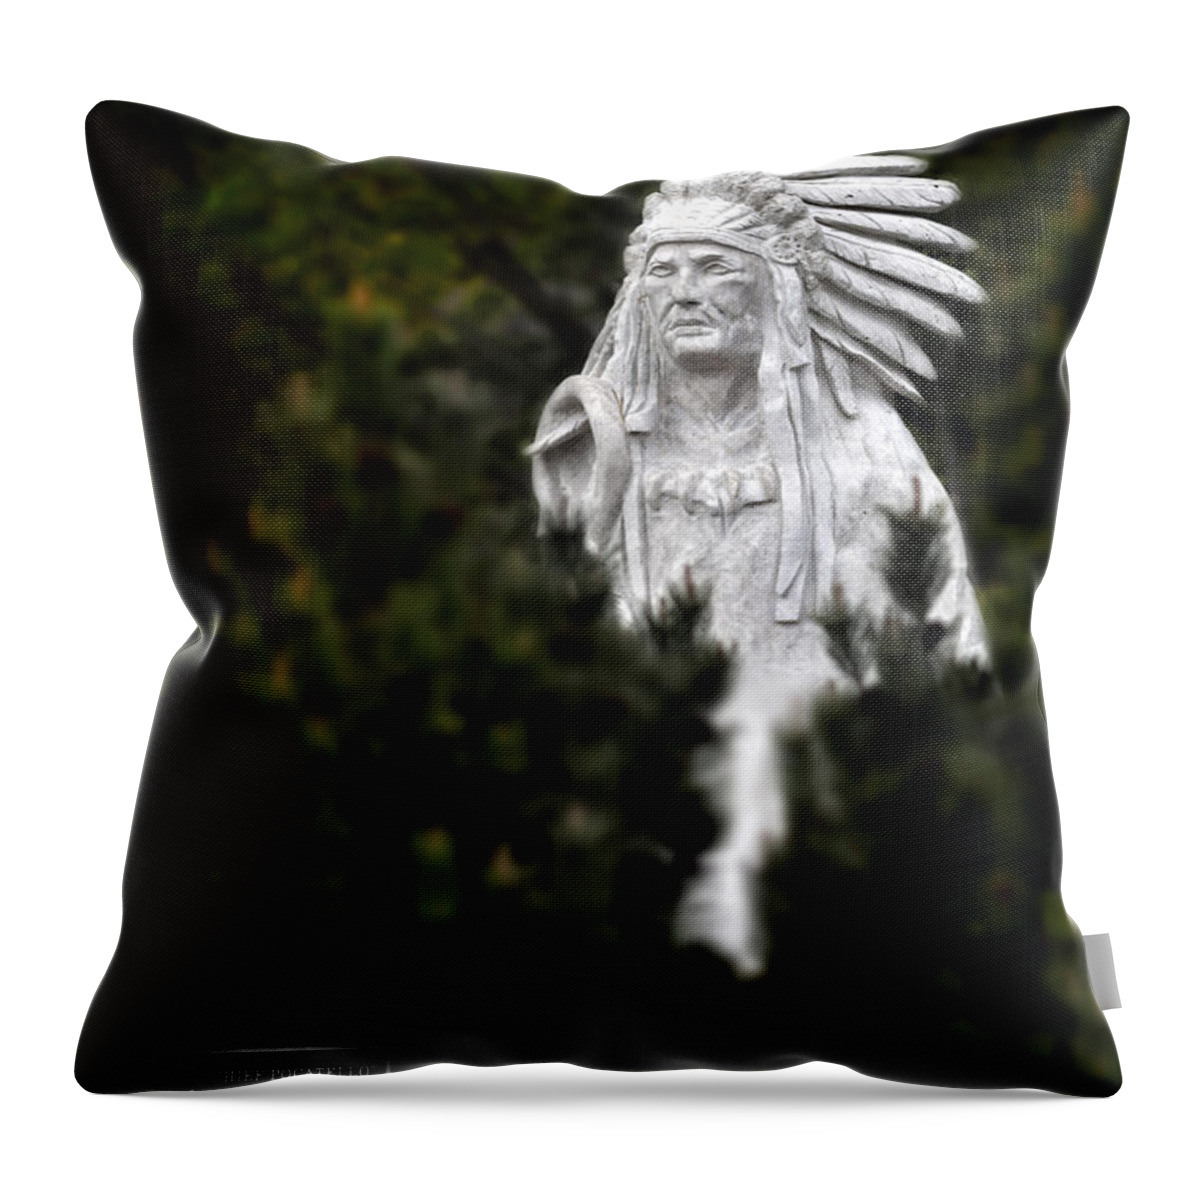 Idaho Throw Pillow featuring the photograph Chief Pocatello Scultpure in Pocatello Idaho by Lane Erickson